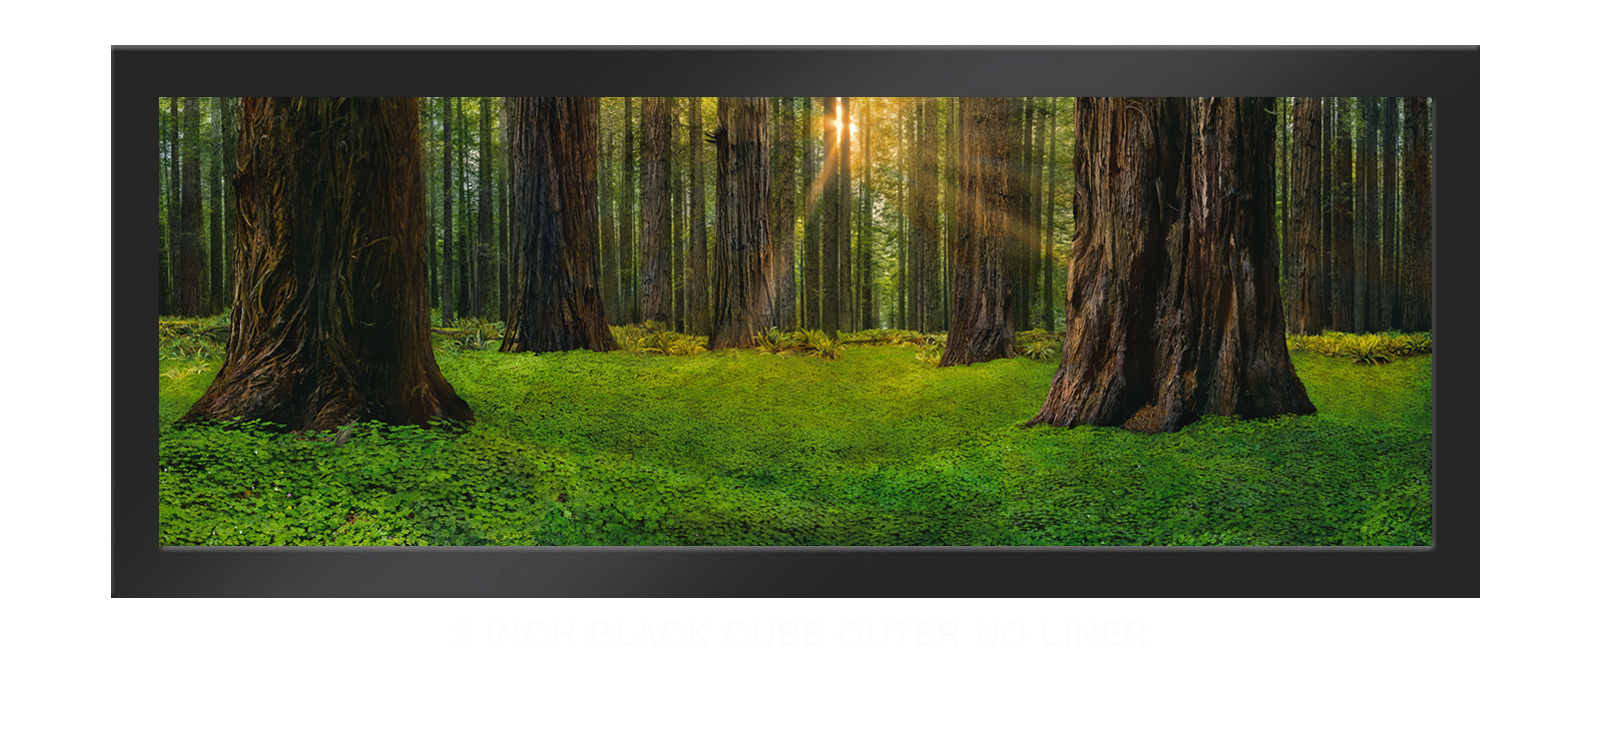 13SANCTUS_TITANICUS 3 Inch Black Cube Outer w_No Liner T